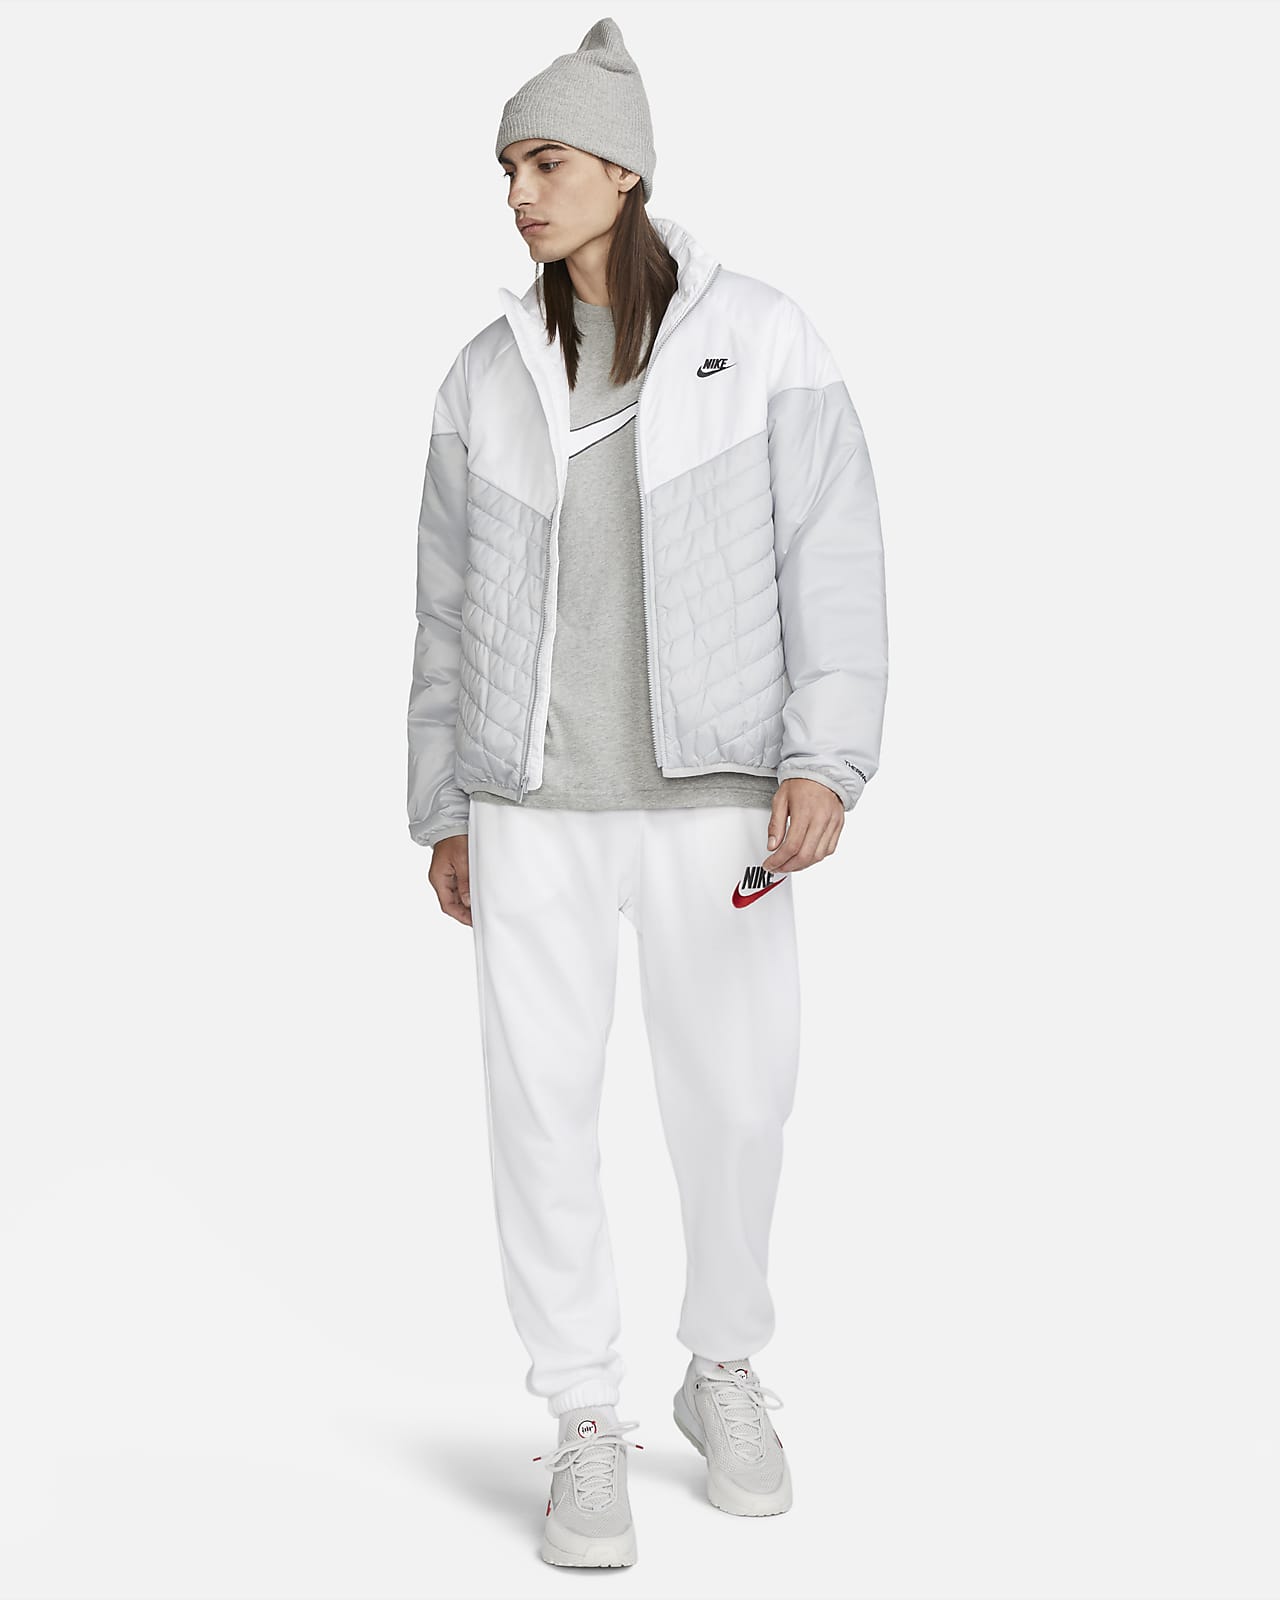 Nike Sportswear Windrunner Men's Hooded Jacket, Smoke Grey/White